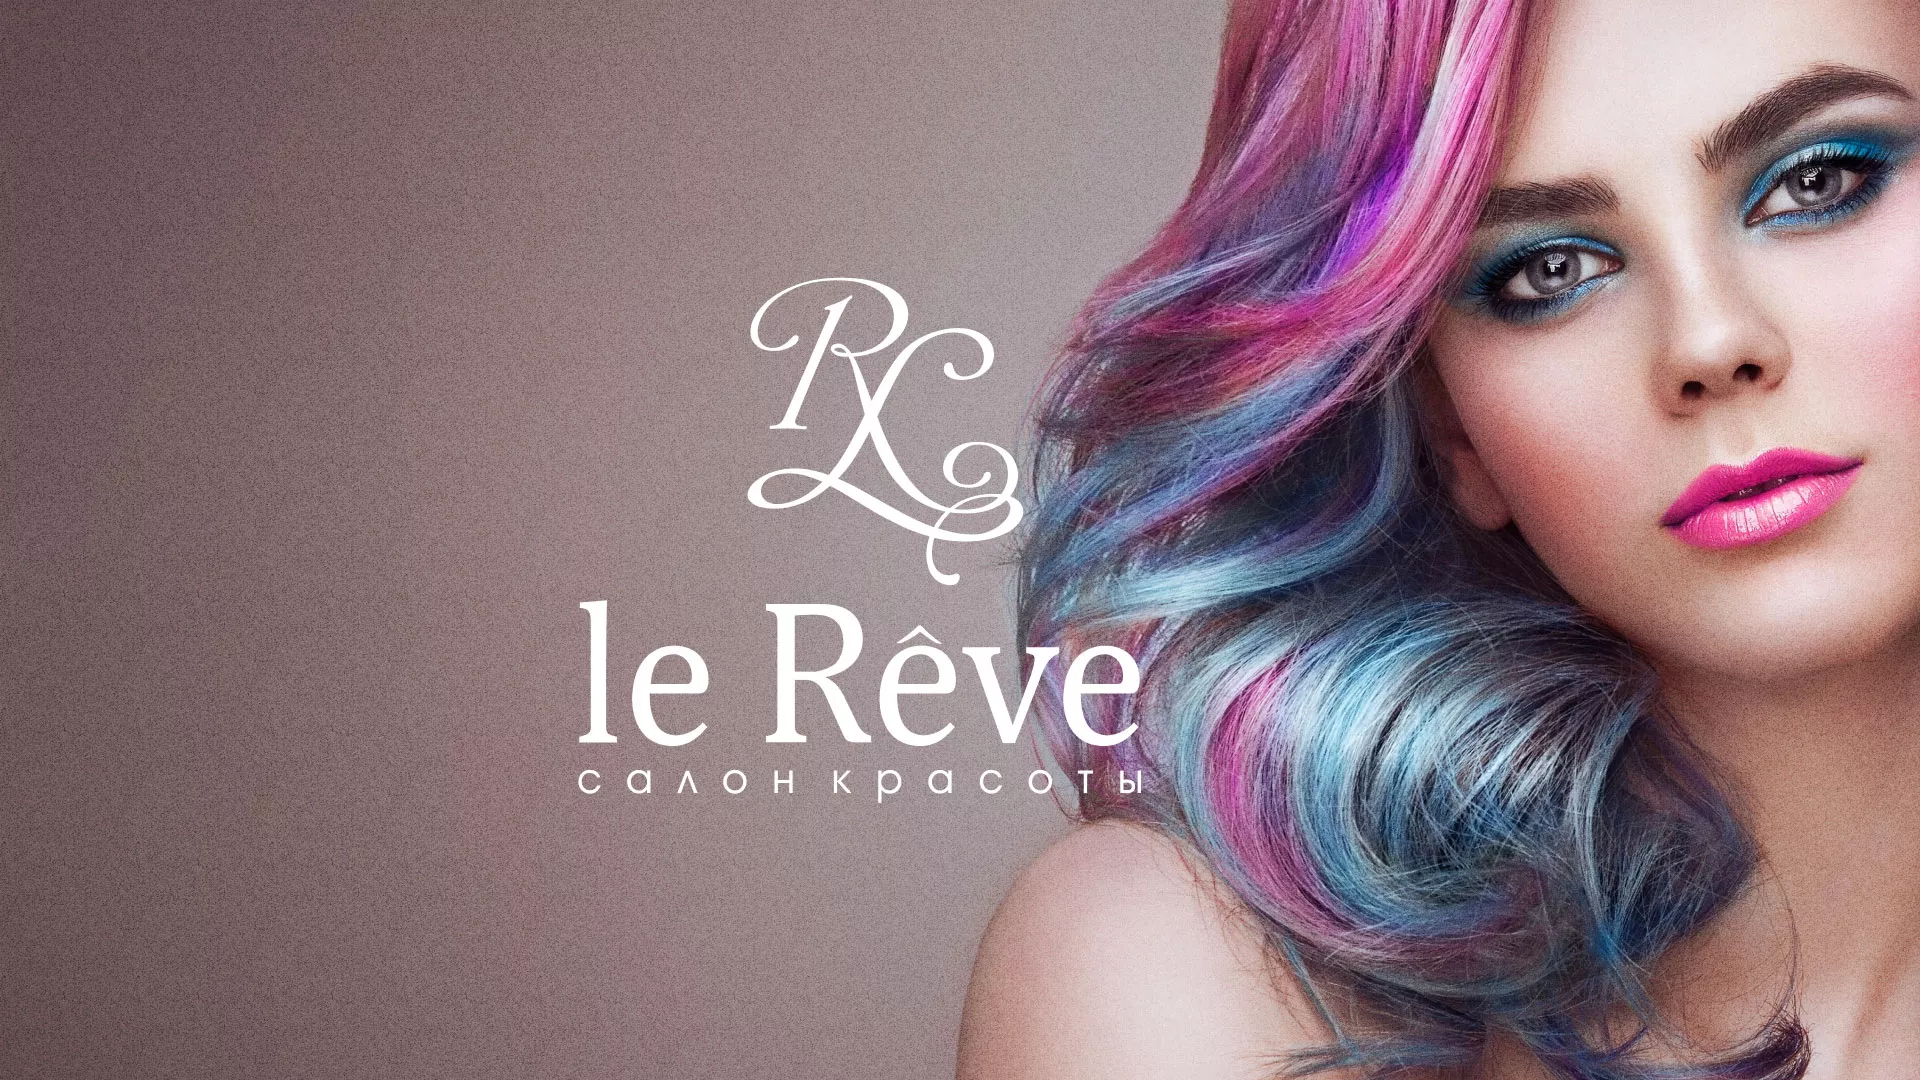 Создание сайта для салона красоты «Le Reve» в Таганроге